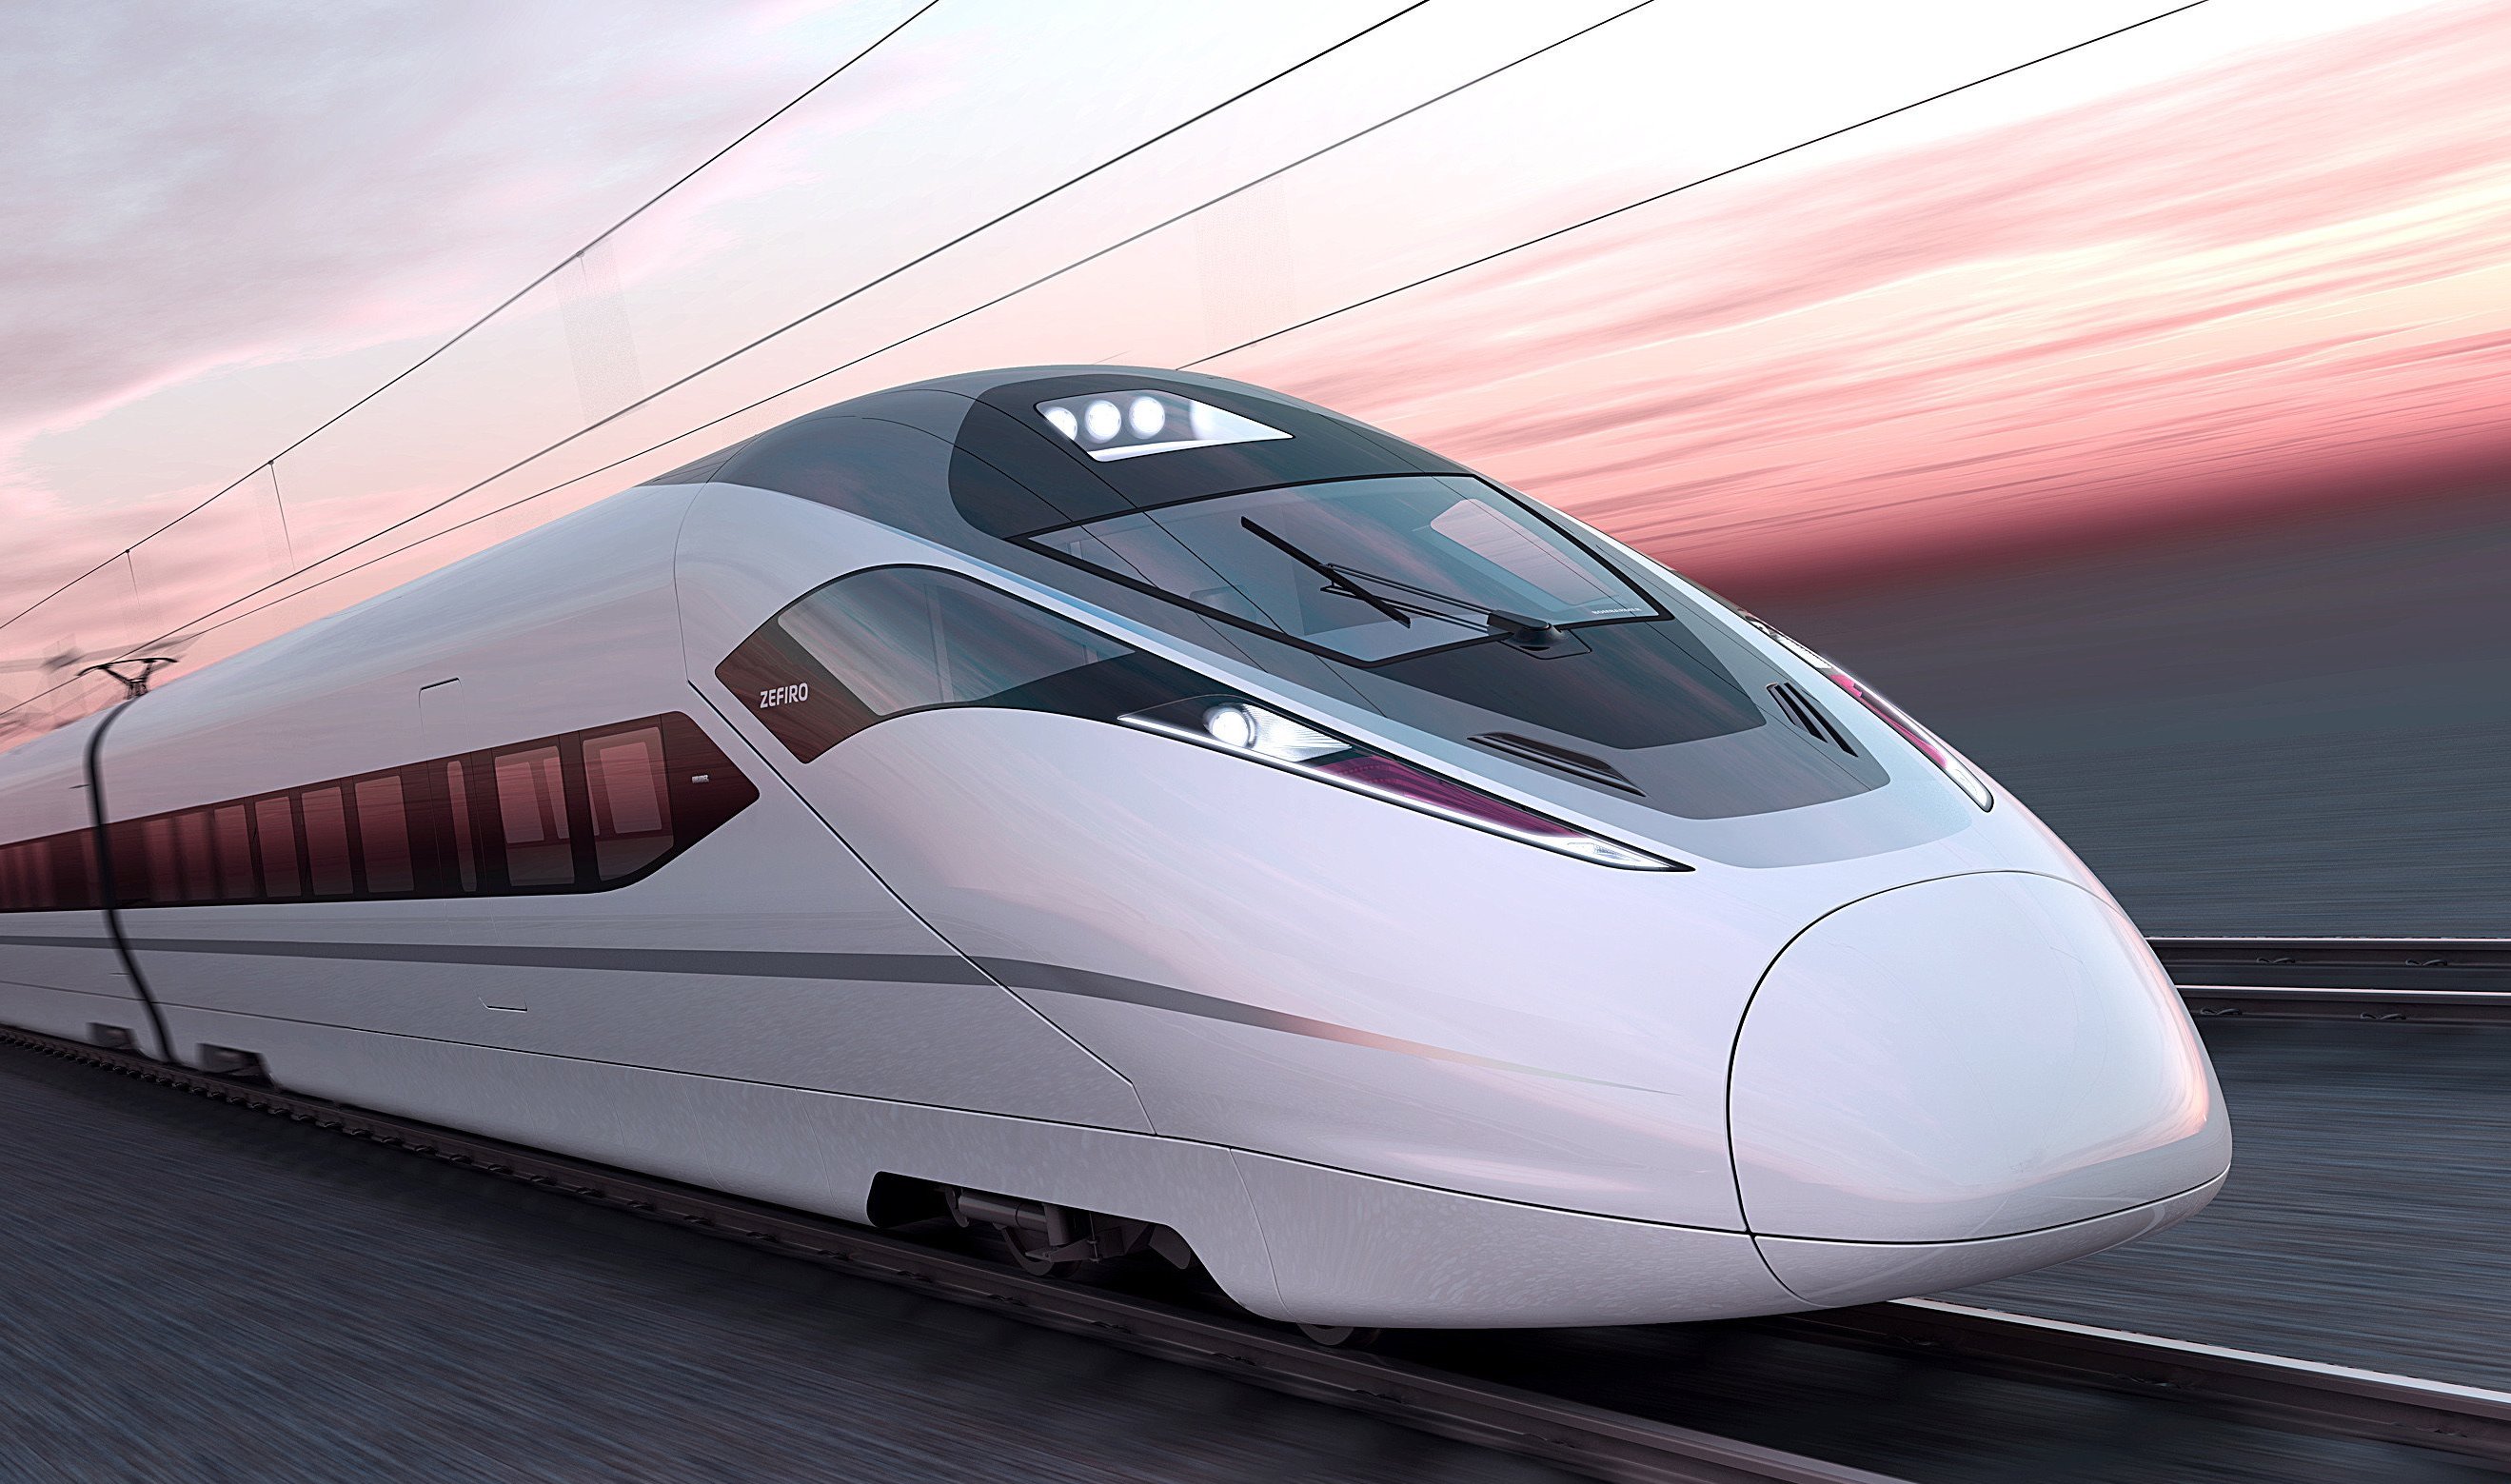 Так выглядит скоростной поезд, который будет курсировать между Москвой и Санкт-Петербургом в 2027 году